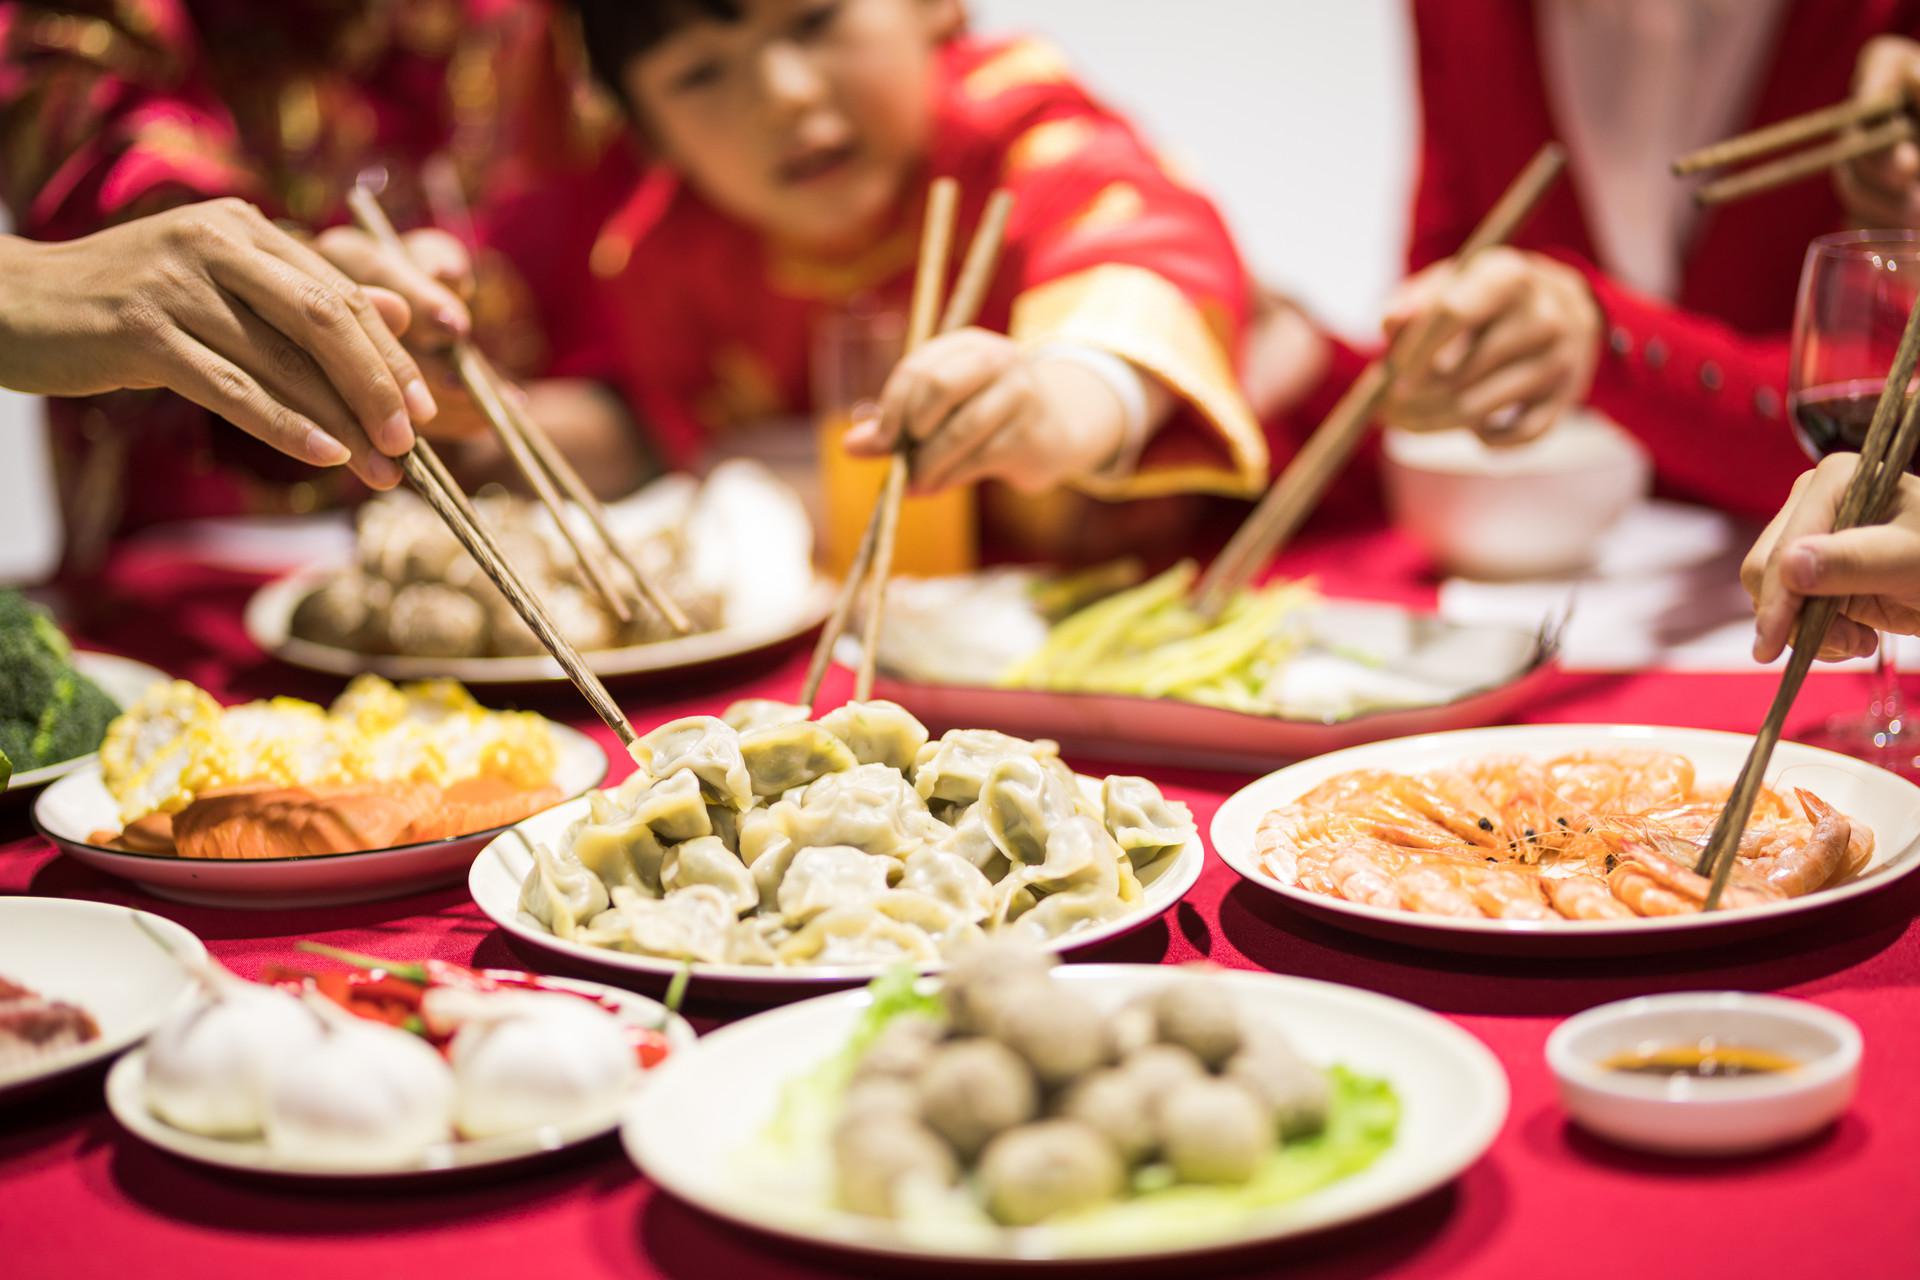 8 quy tắc trên bàn ăn của người TQ khiến du khách lúng túng, người Việt lại gật gù đồng tình - 5